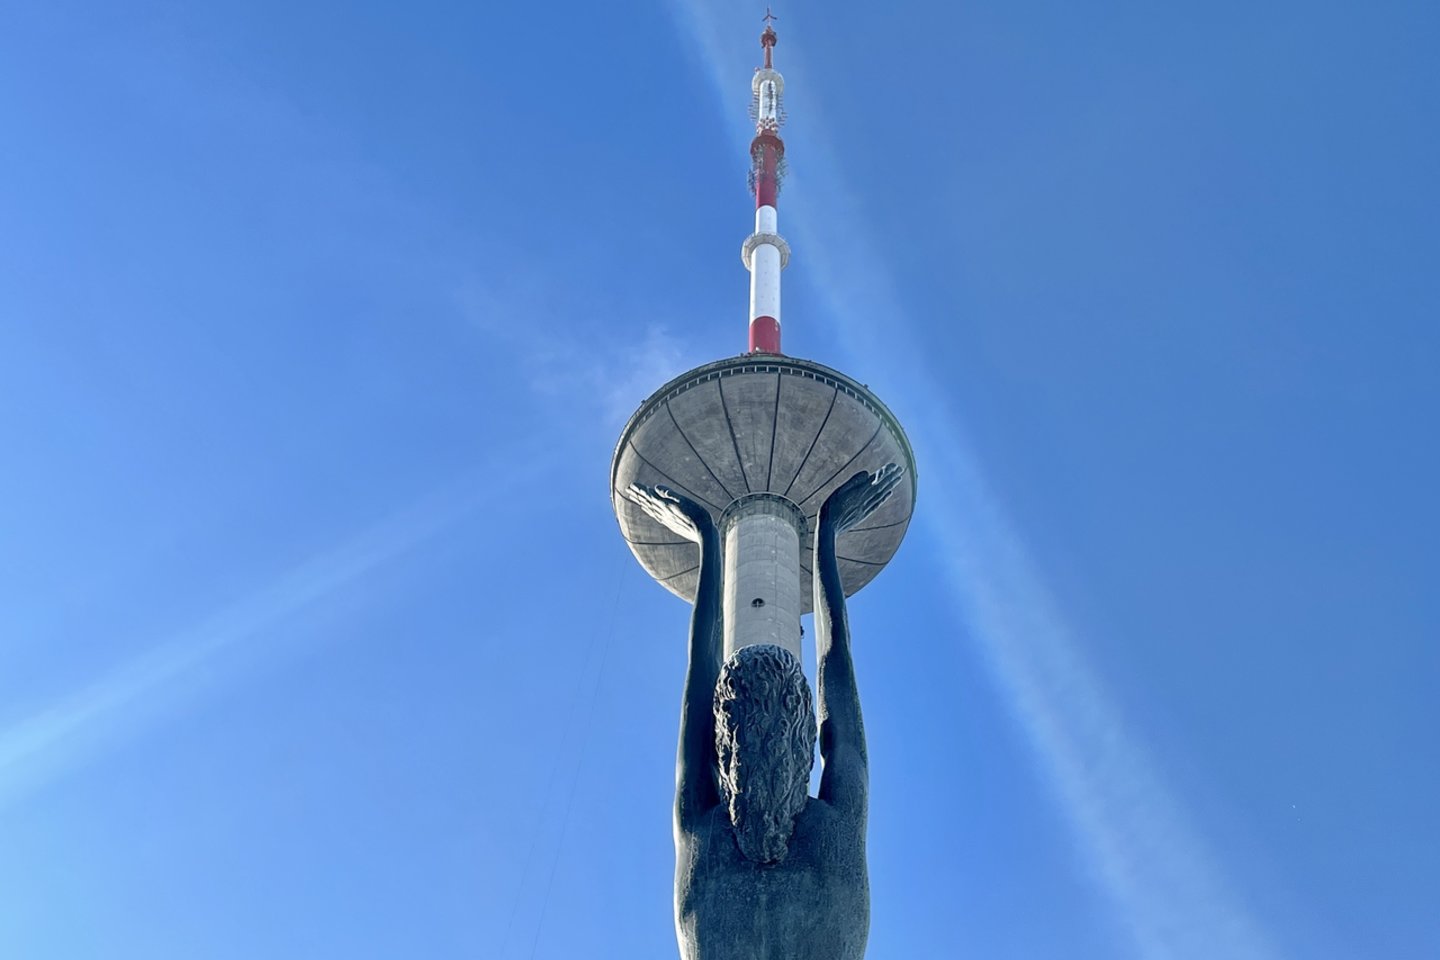  Ant Vilniaus televizijos bokšto pasirodė didžiausia šalyje Trispalvė.<br> V.Ščiavinsko nuotr.